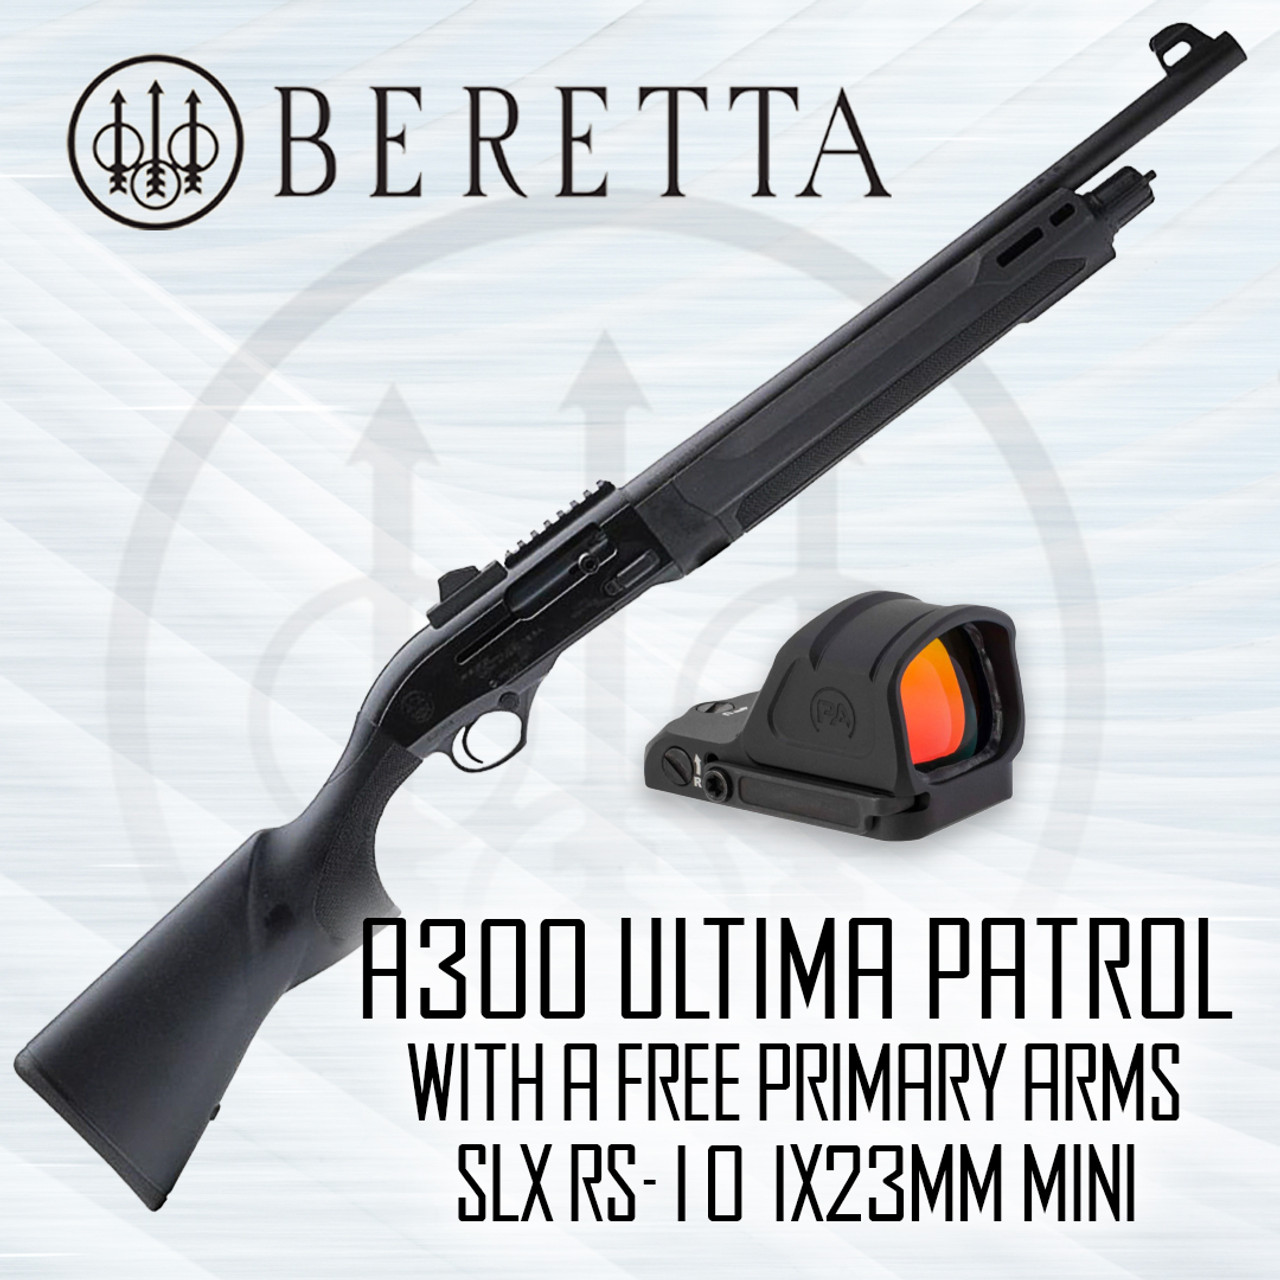 Beretta A300 Ultima Patrol, BLK - 12GA, 2-3/4" or 3", 19" Barrel [J32CT511]